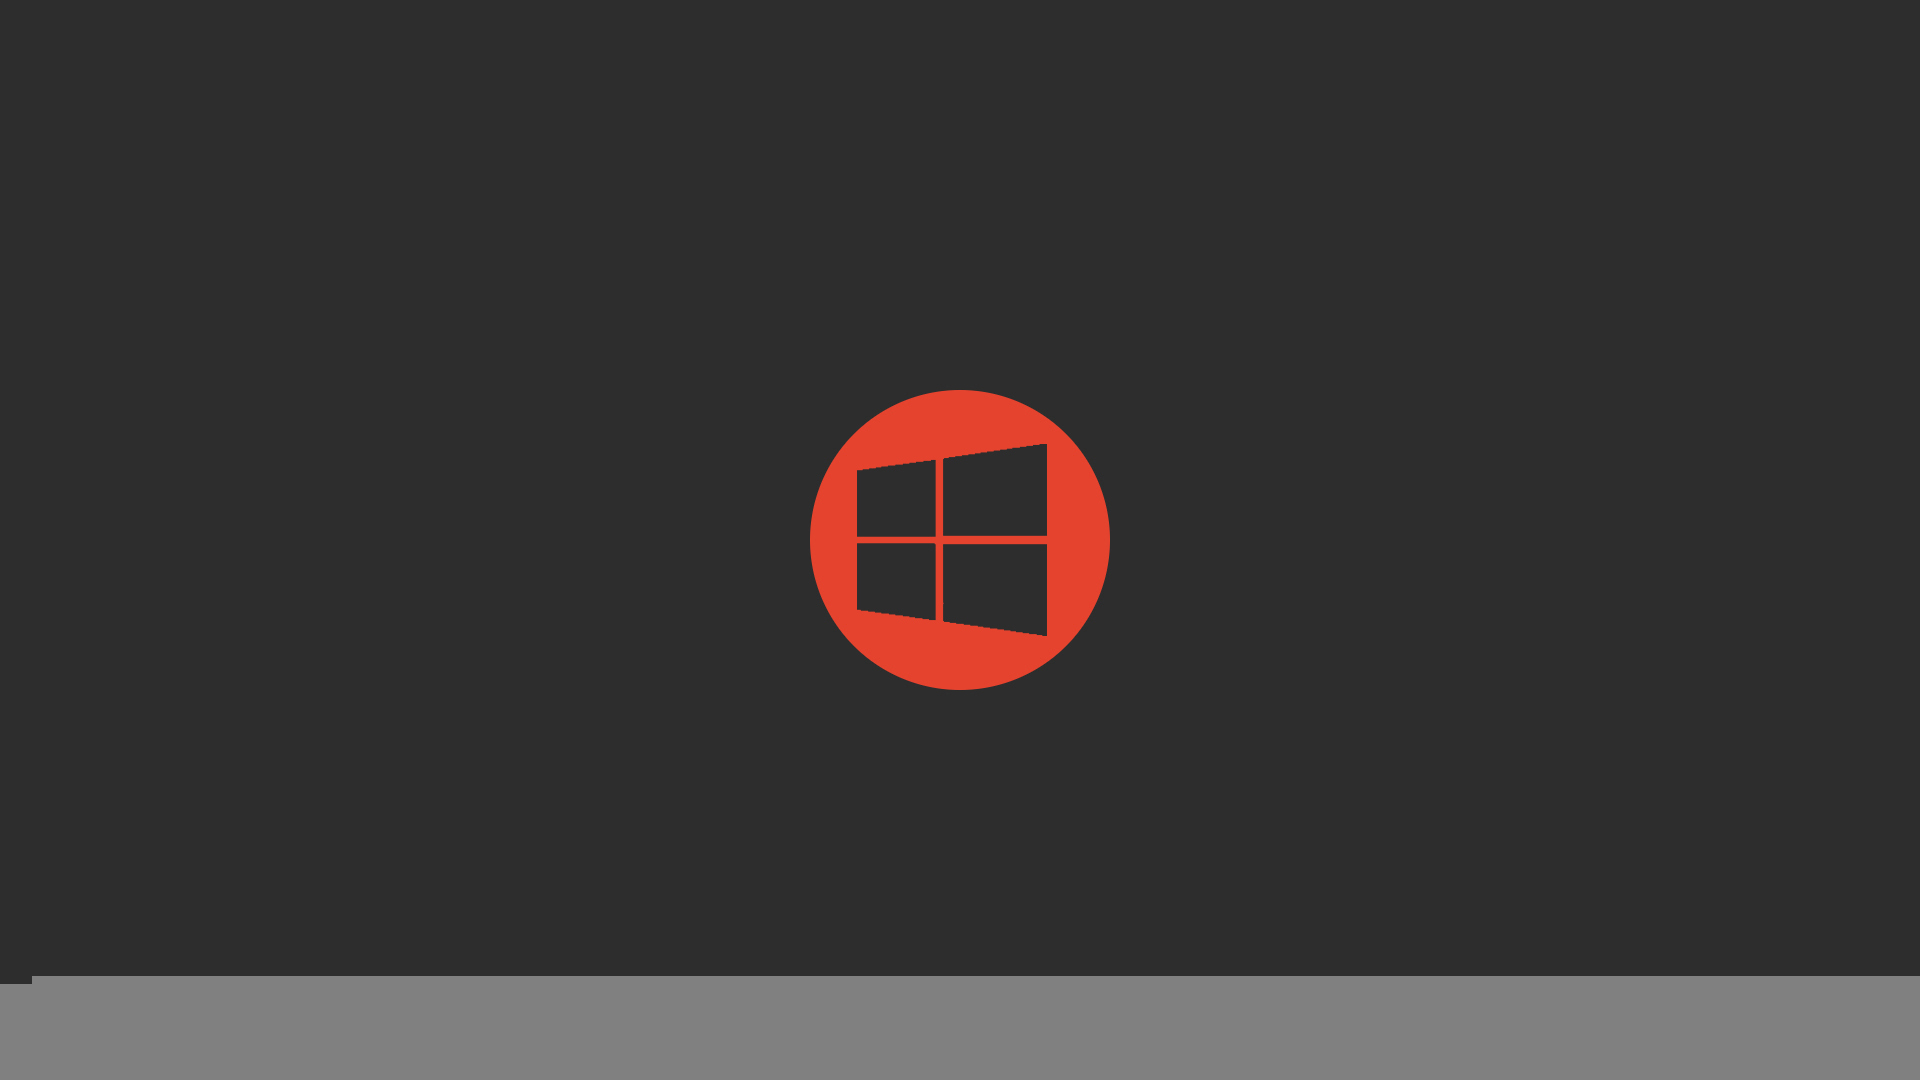 Microsoft Wallpapers For Windows 10 Wallpapersafari